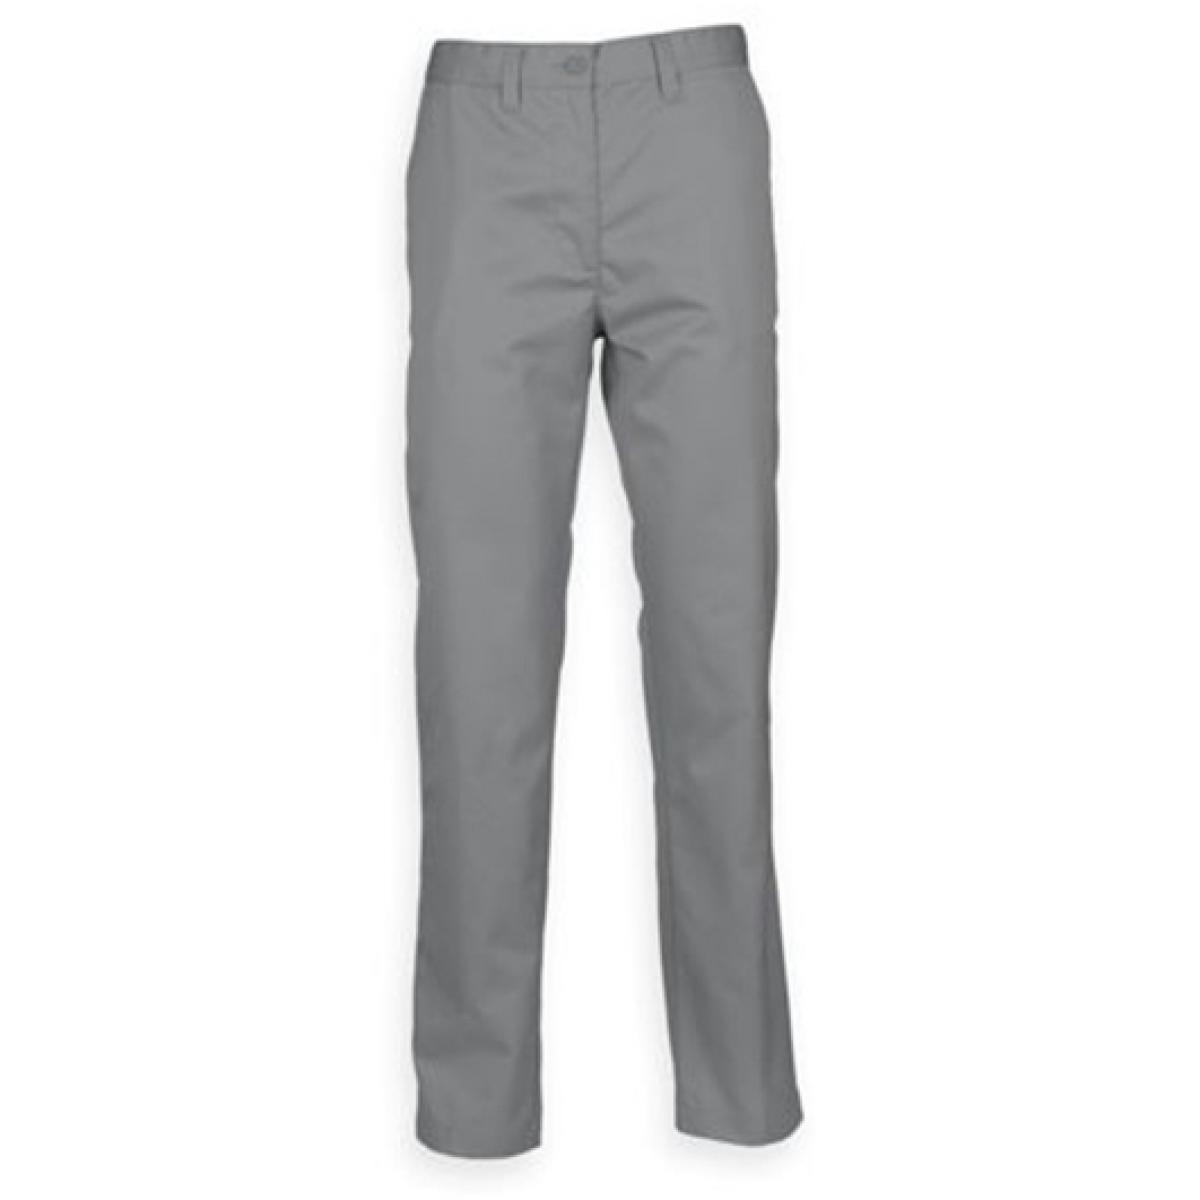 Hersteller: Henbury Herstellernummer: H640 Artikelbezeichnung: Men’s 65/35 Chino Trousers Farbe: Steel Grey